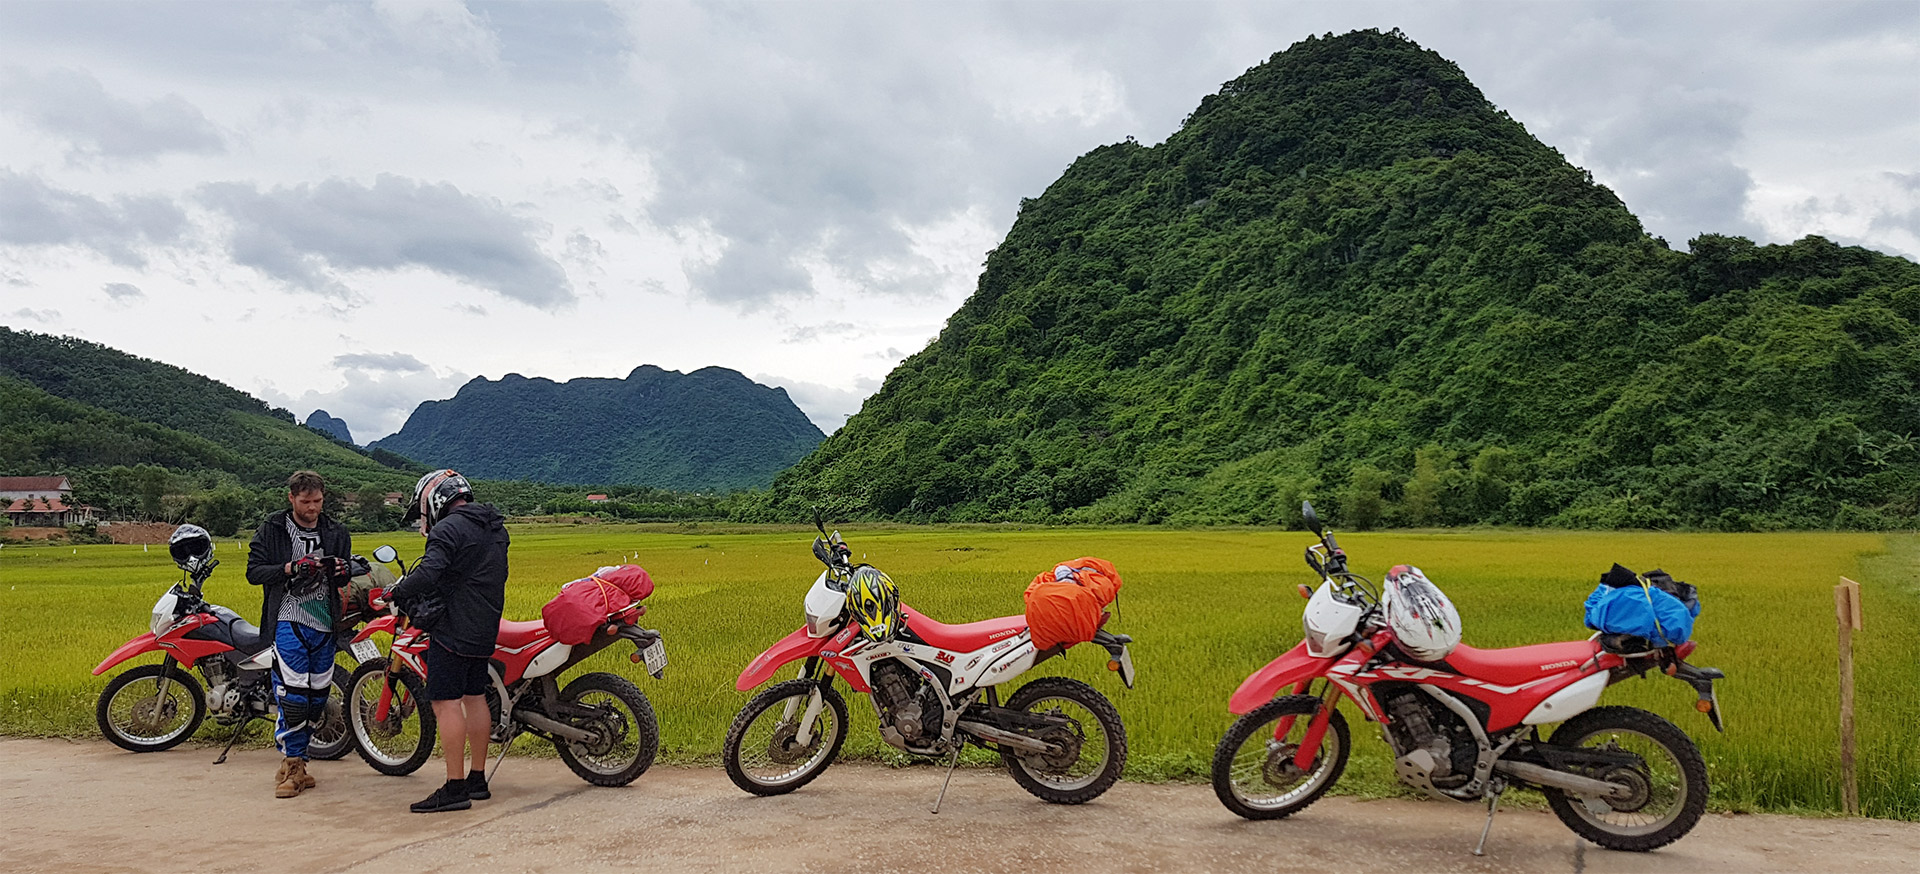 Mandalay Motorbike Tour To Inle Lake - 6 days